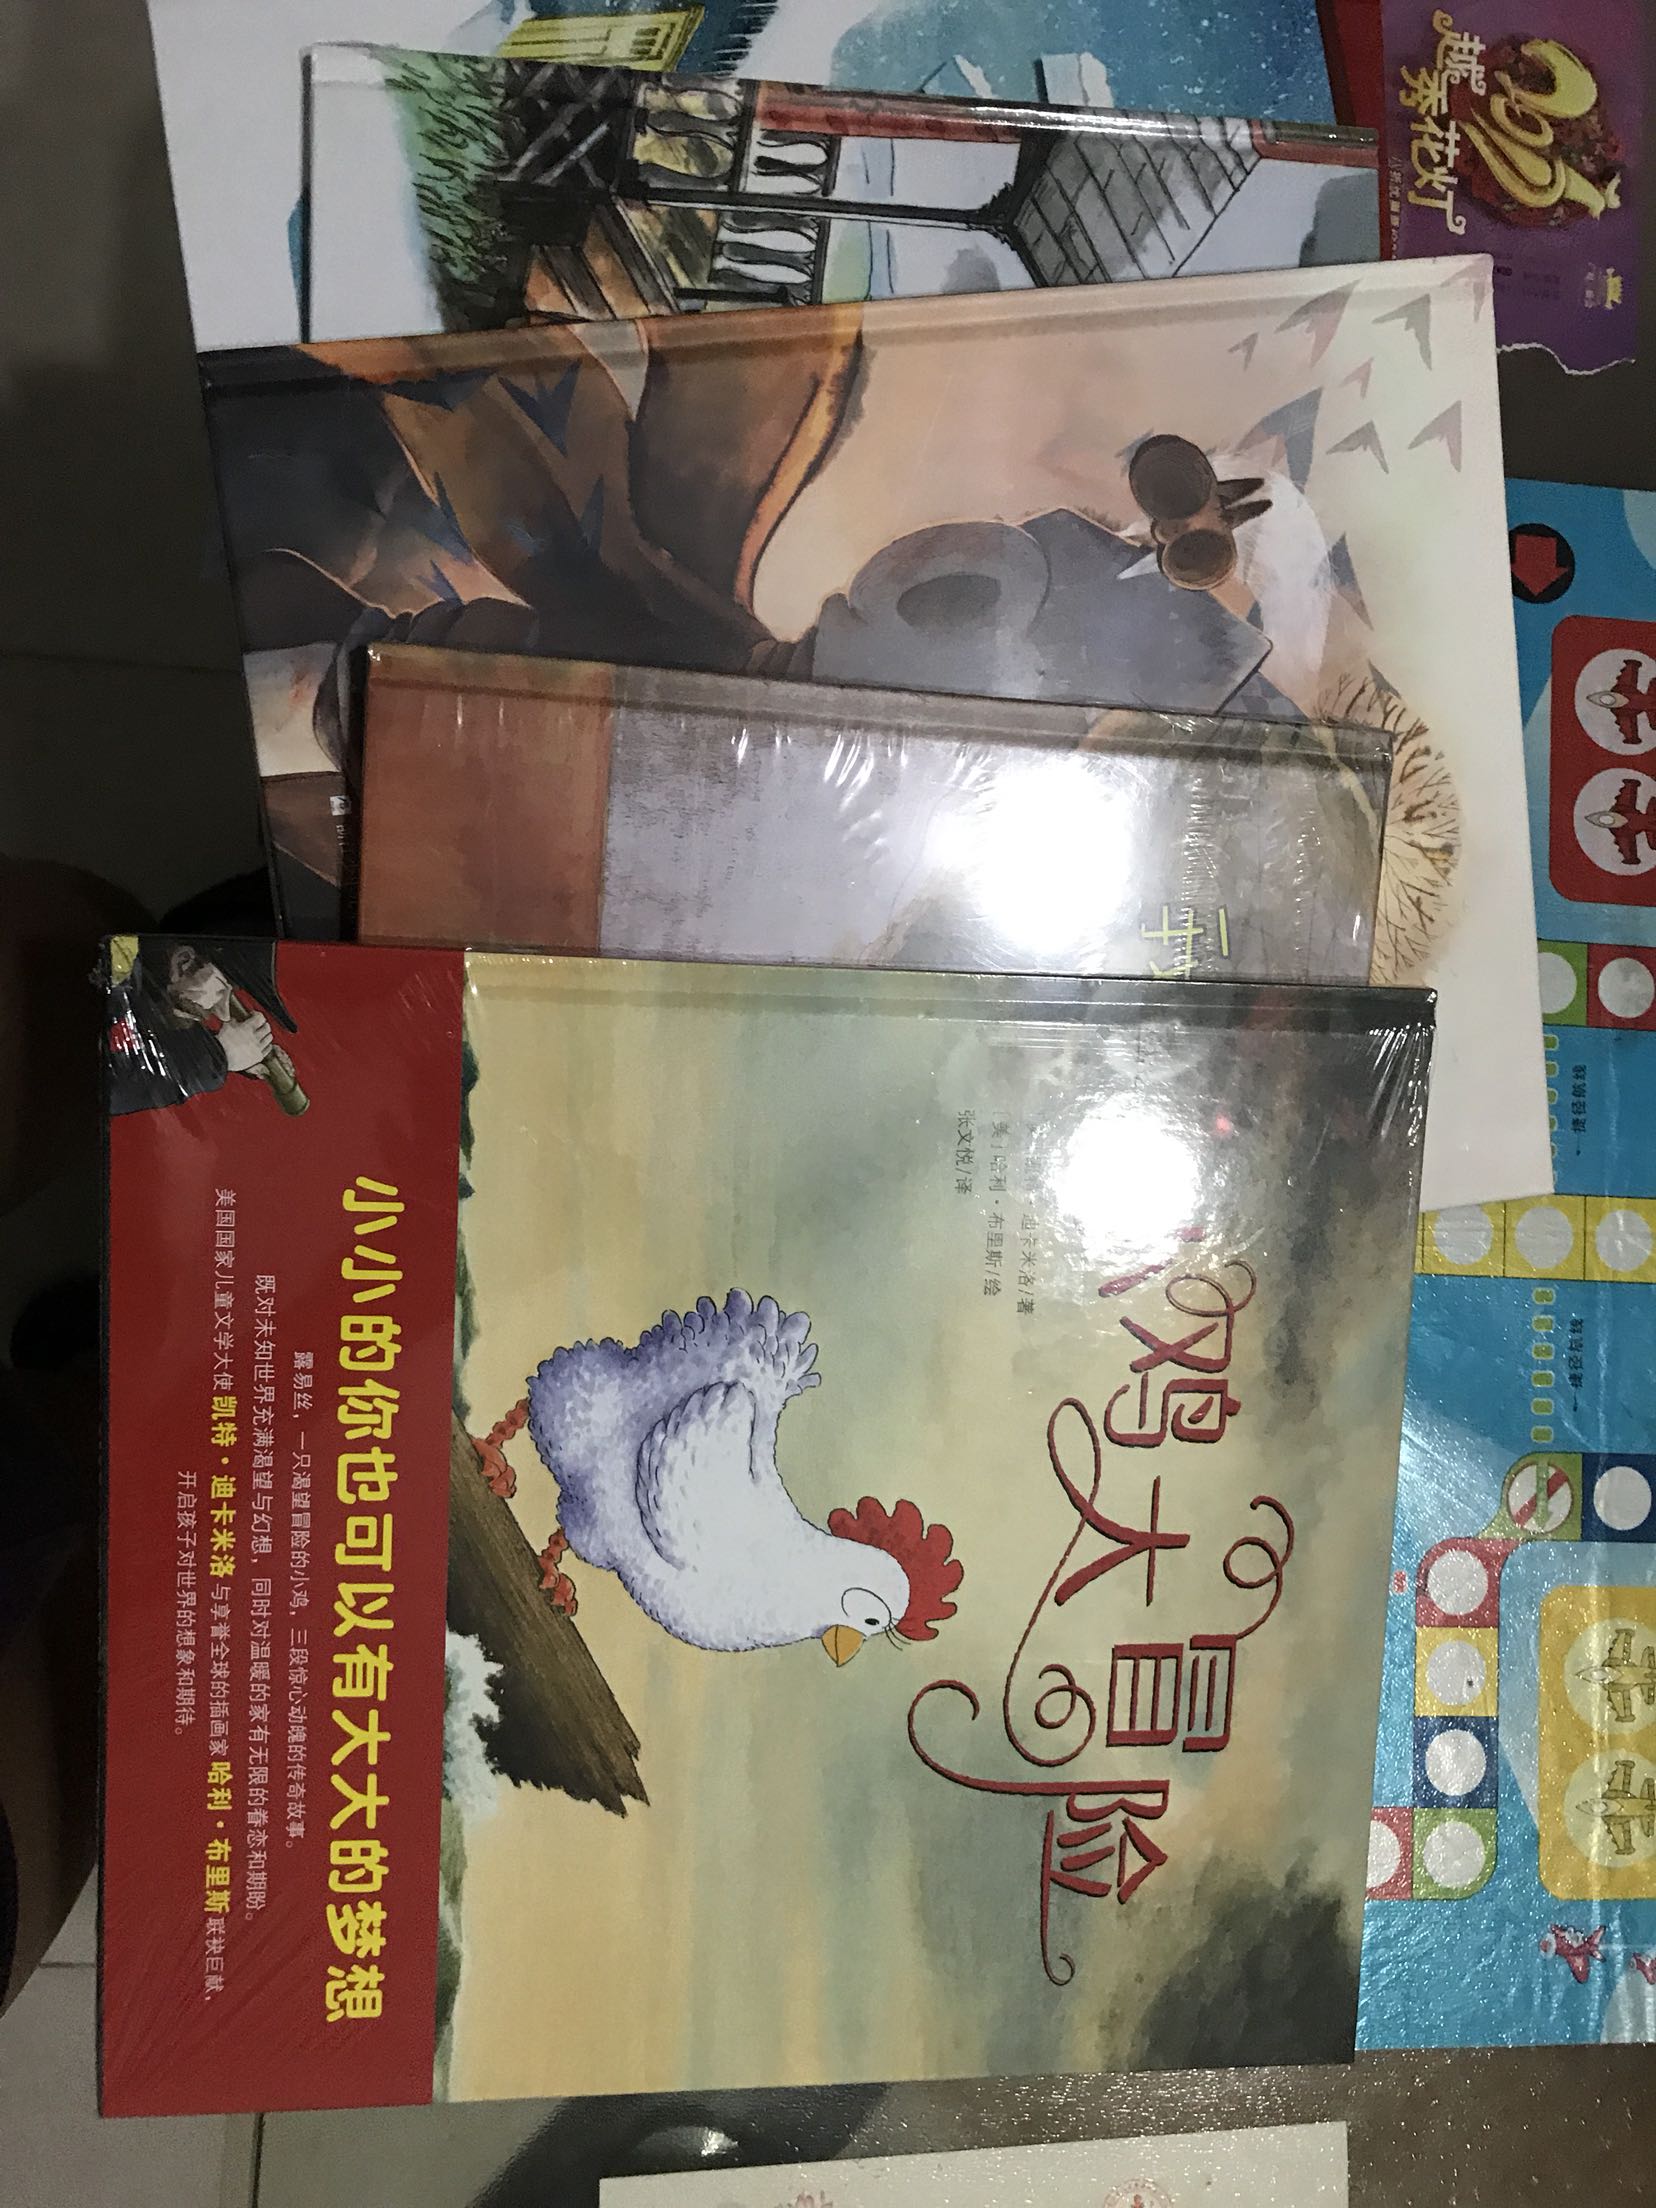 非常喜欢这套丛书，夹着的扉页有一篇「写给中国父母的话」，注重亲子阅读，是建立亲子纽带的良好途径之一。